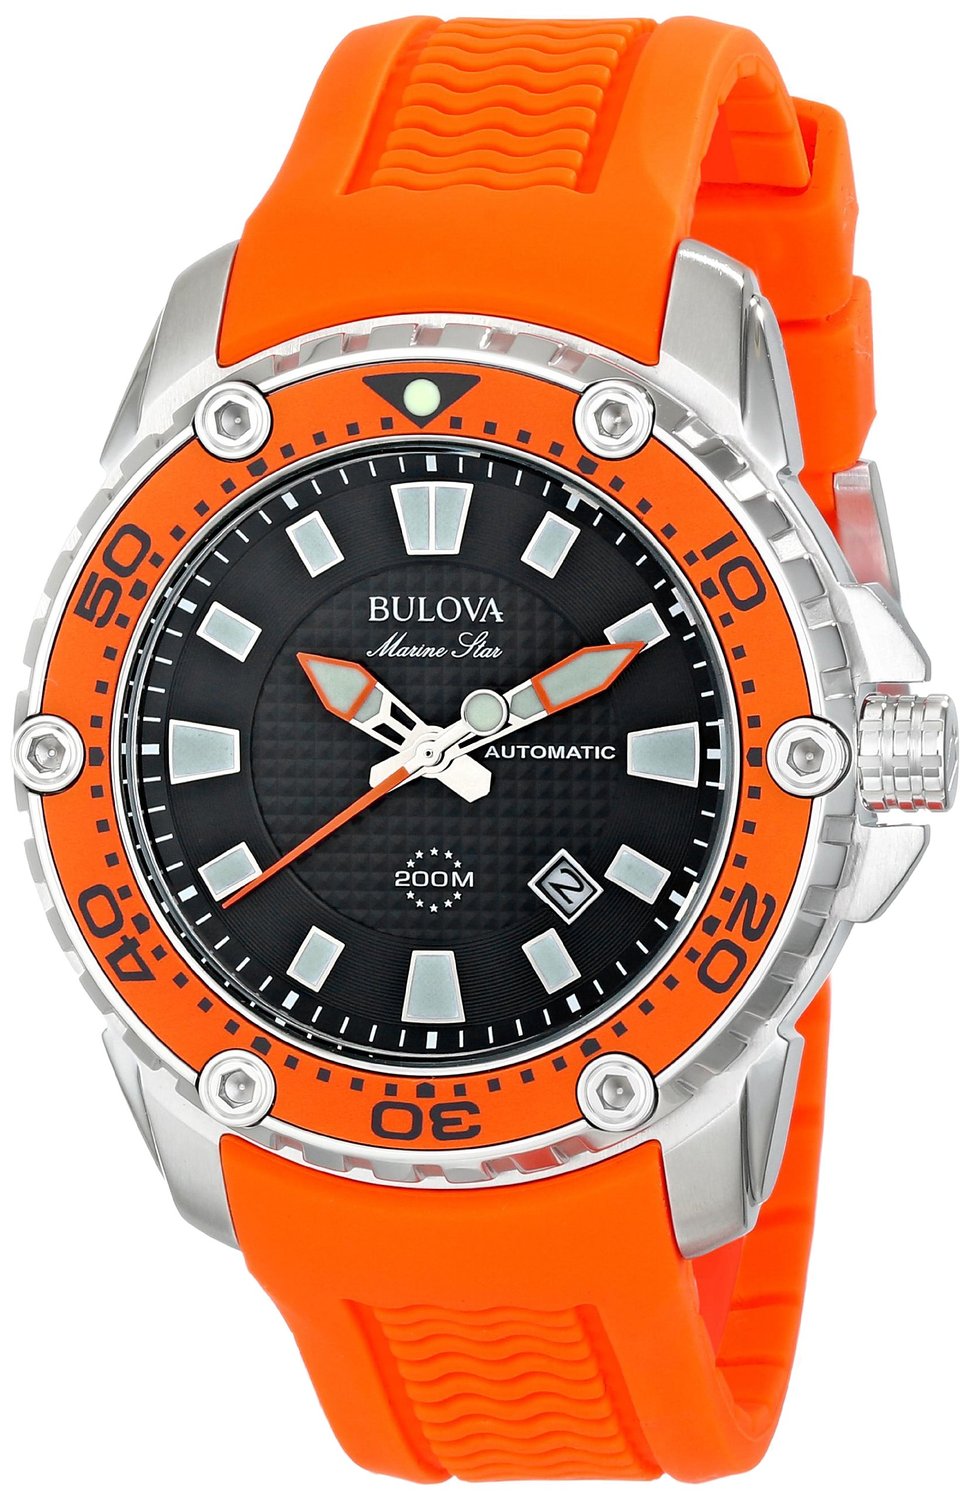 Bulova Marine Star Quality Watch 98B207 Orange Dive Watch